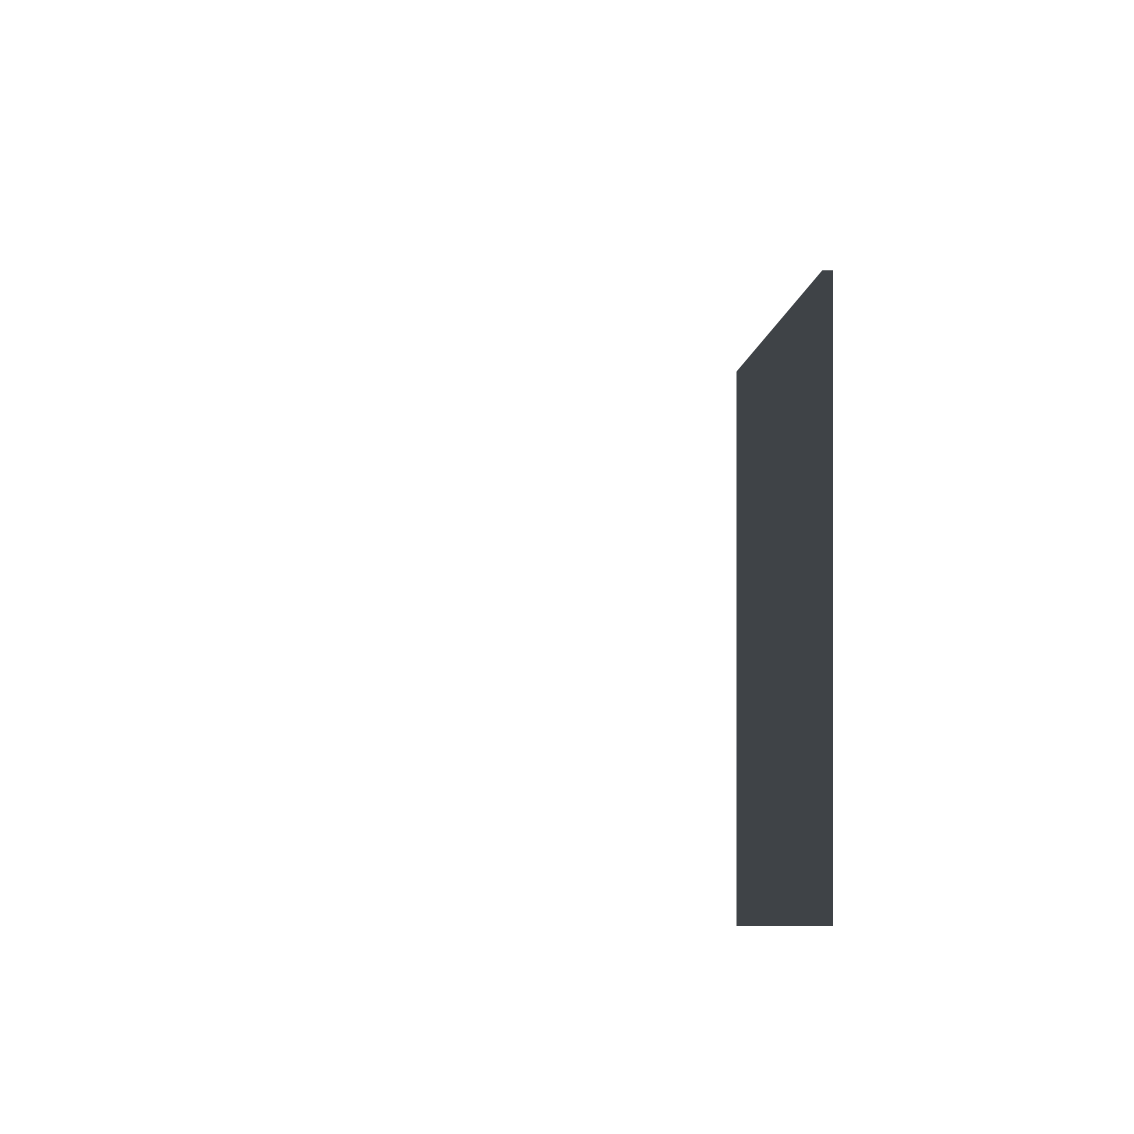 2 Badminton courts